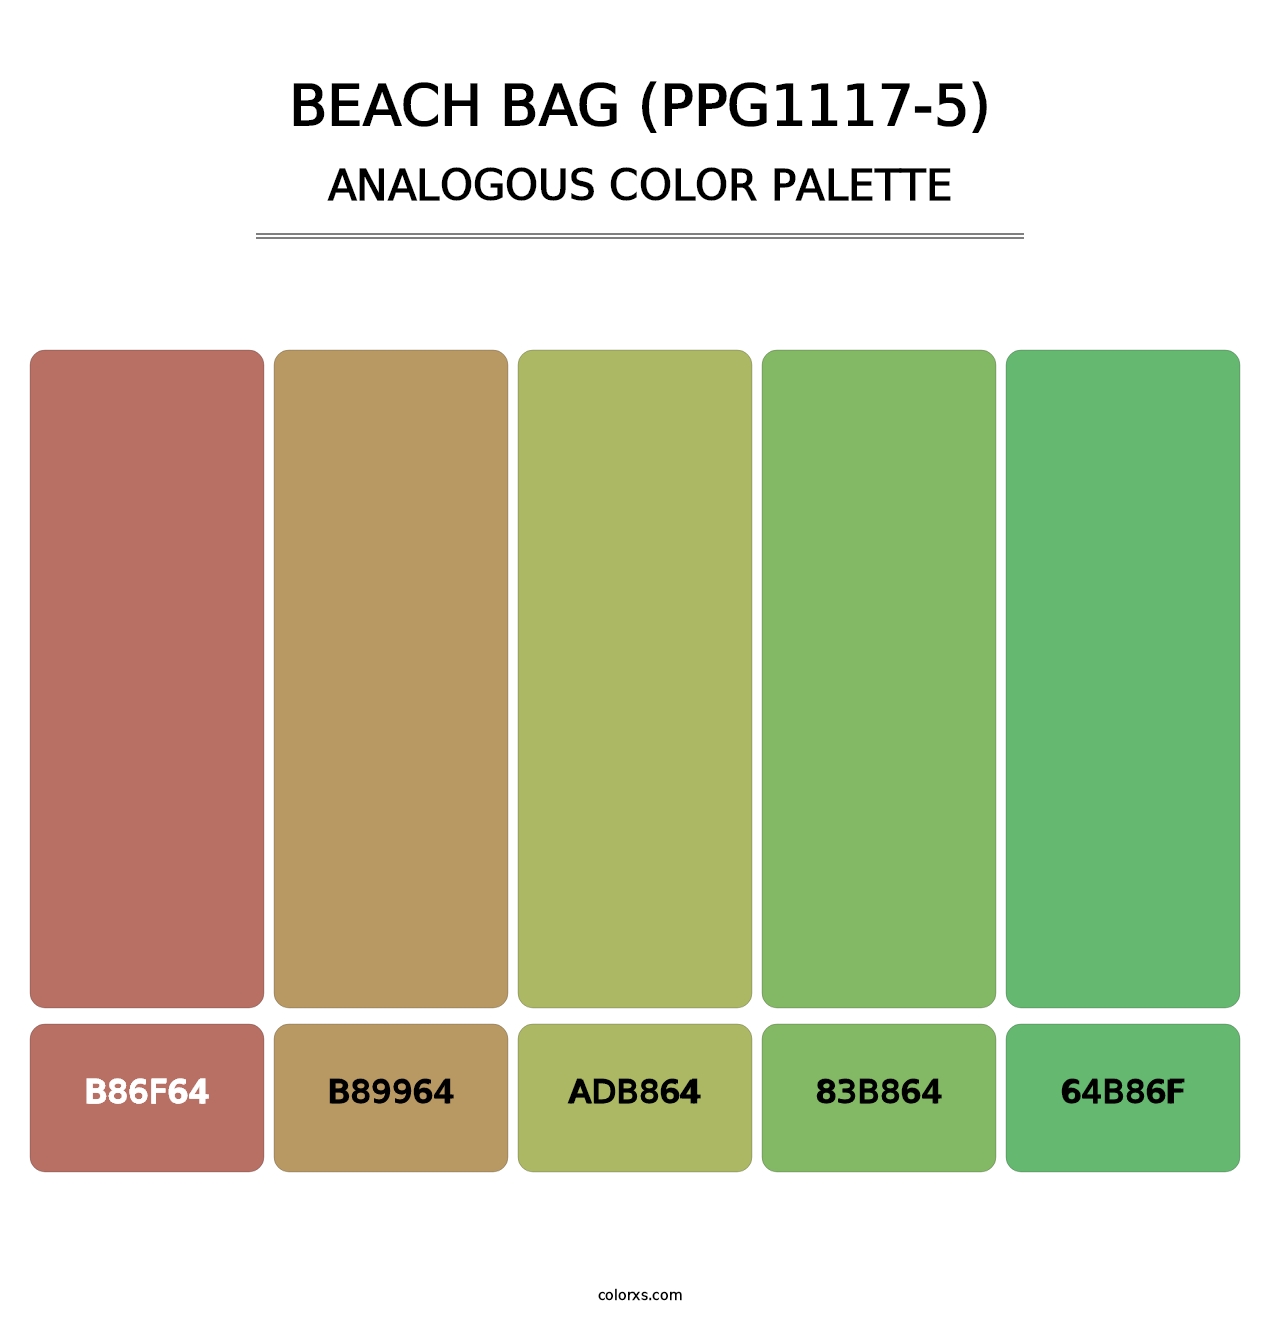 Beach Bag (PPG1117-5) - Analogous Color Palette